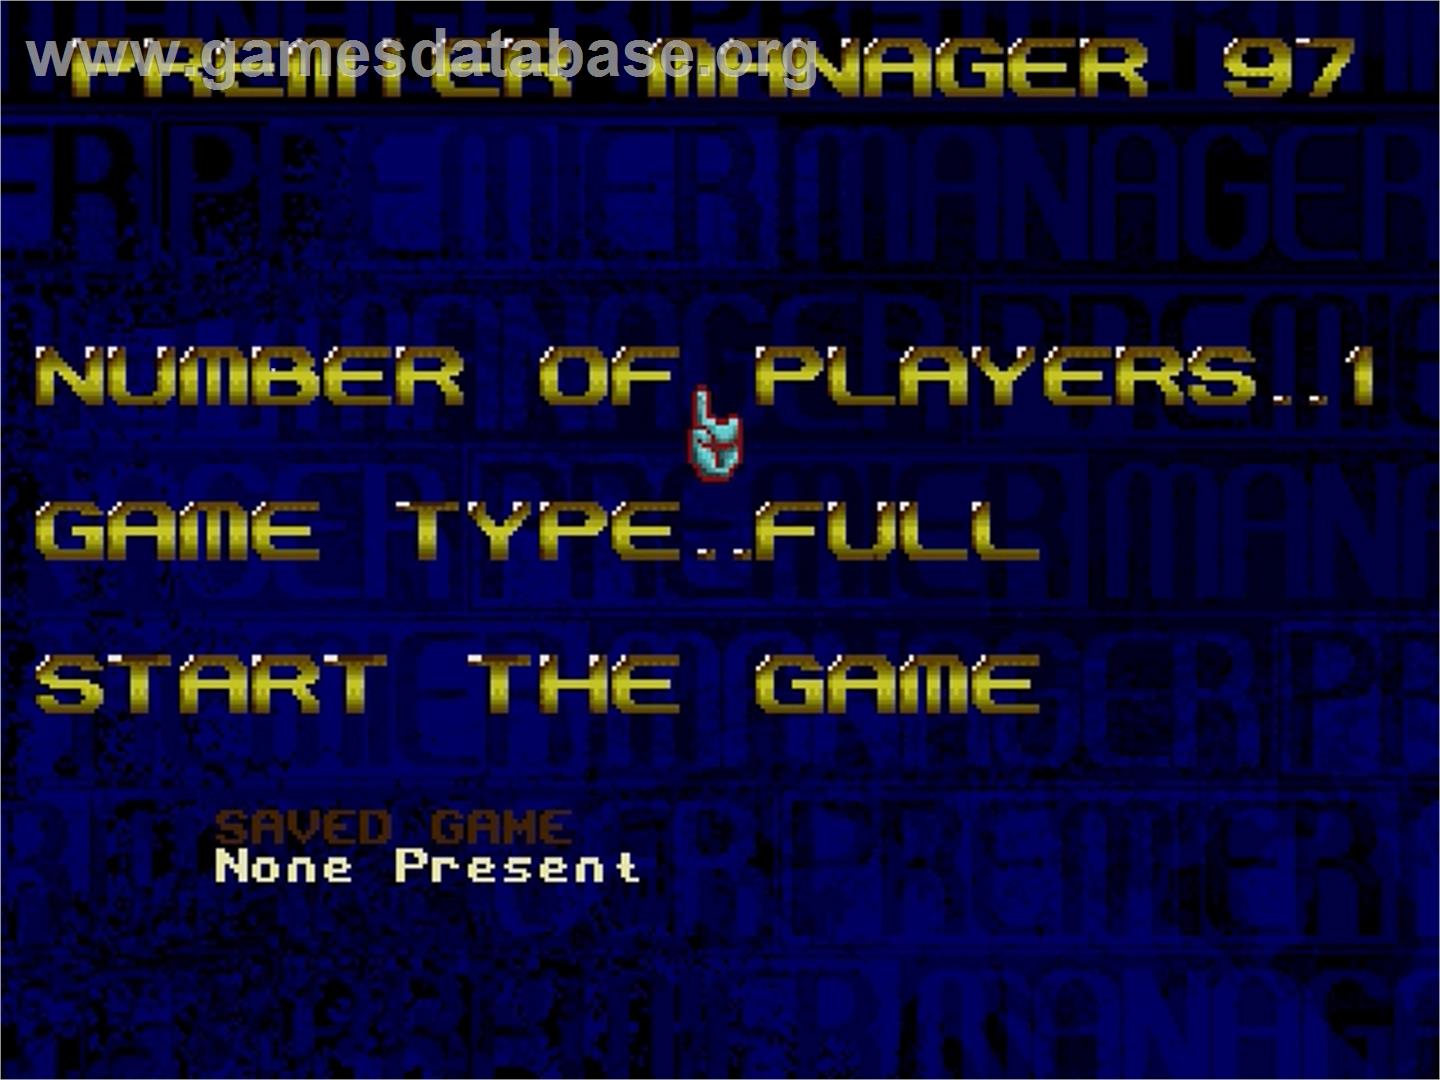 Premier Manager 97 - Sega Genesis - Artwork - Title Screen